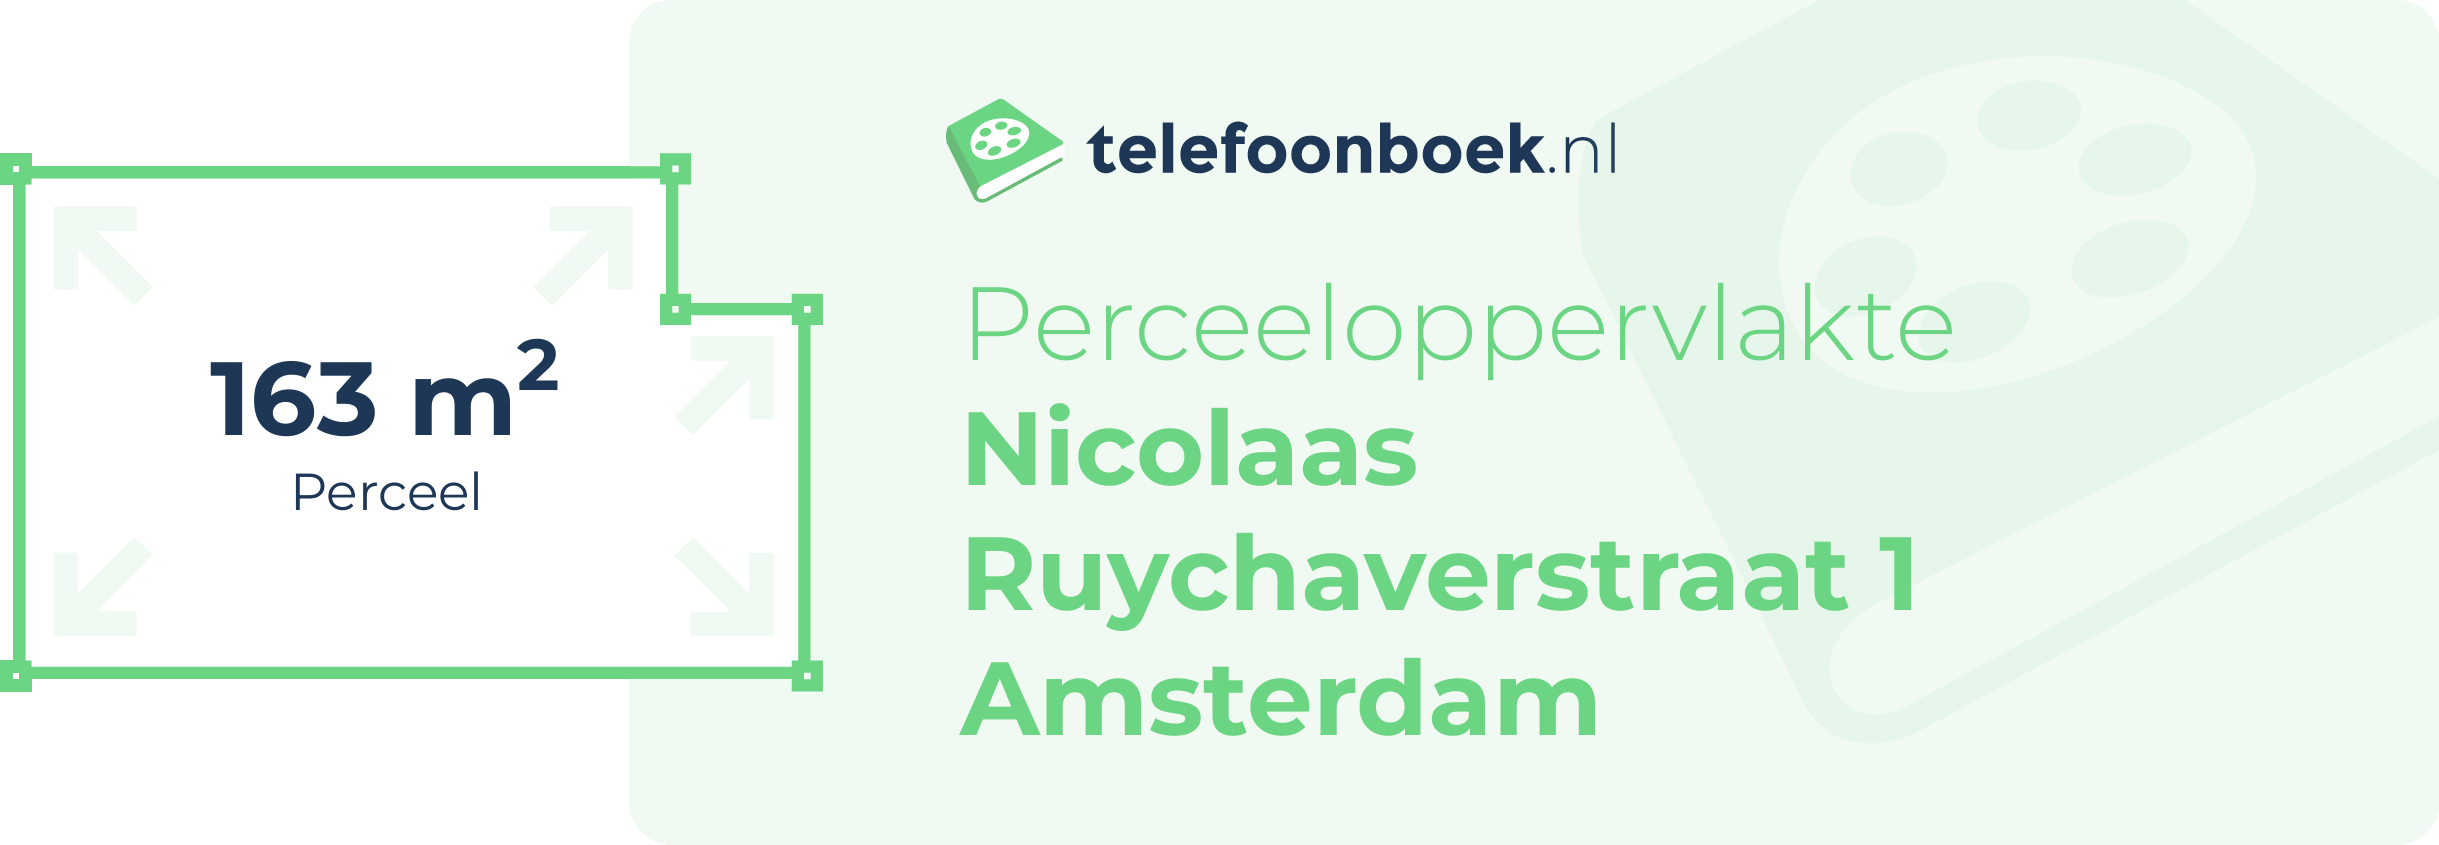 Perceeloppervlakte Nicolaas Ruychaverstraat 1 Amsterdam